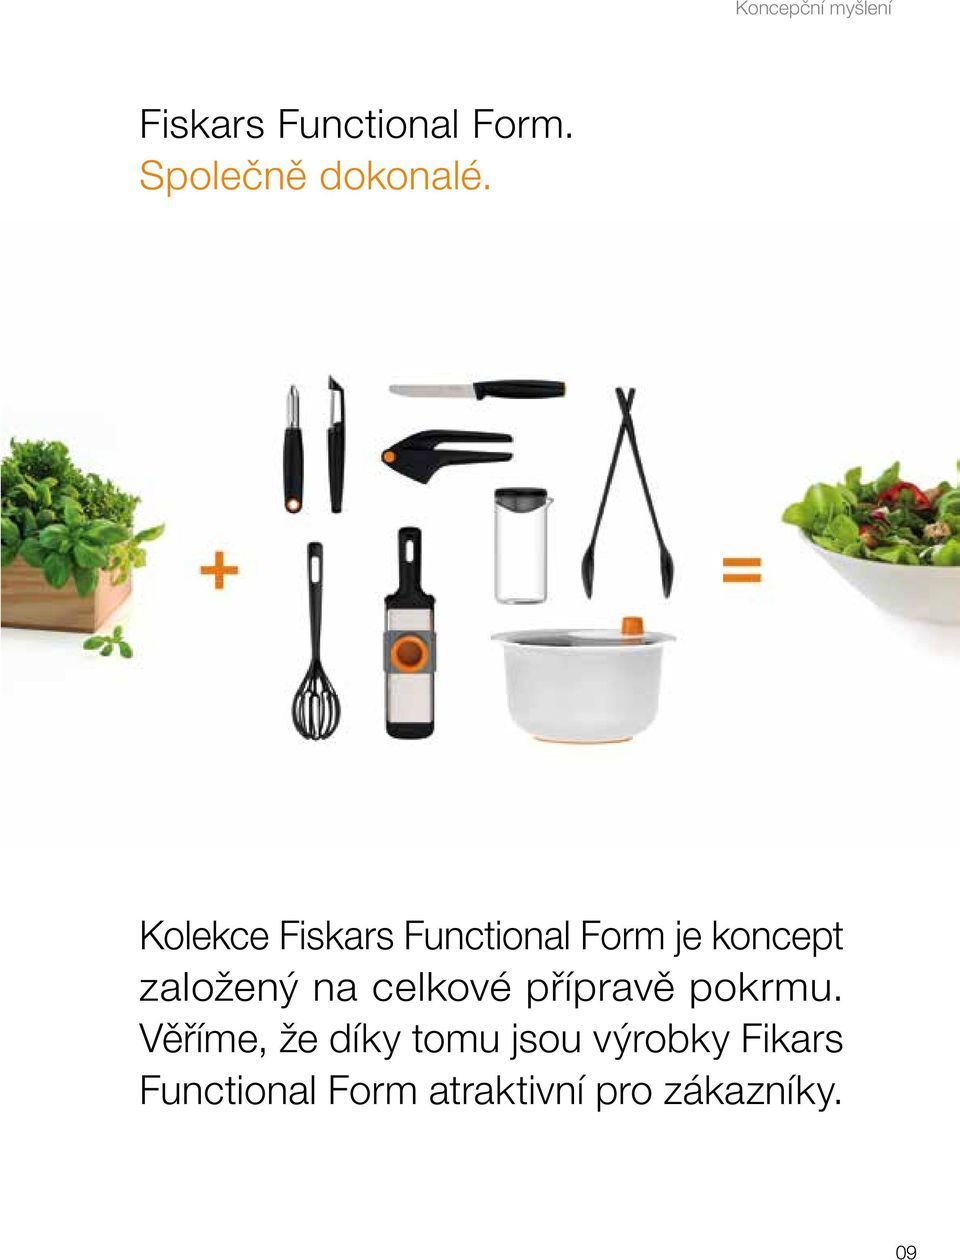 Kolekce Fiskars Functional Form je koncept založený na